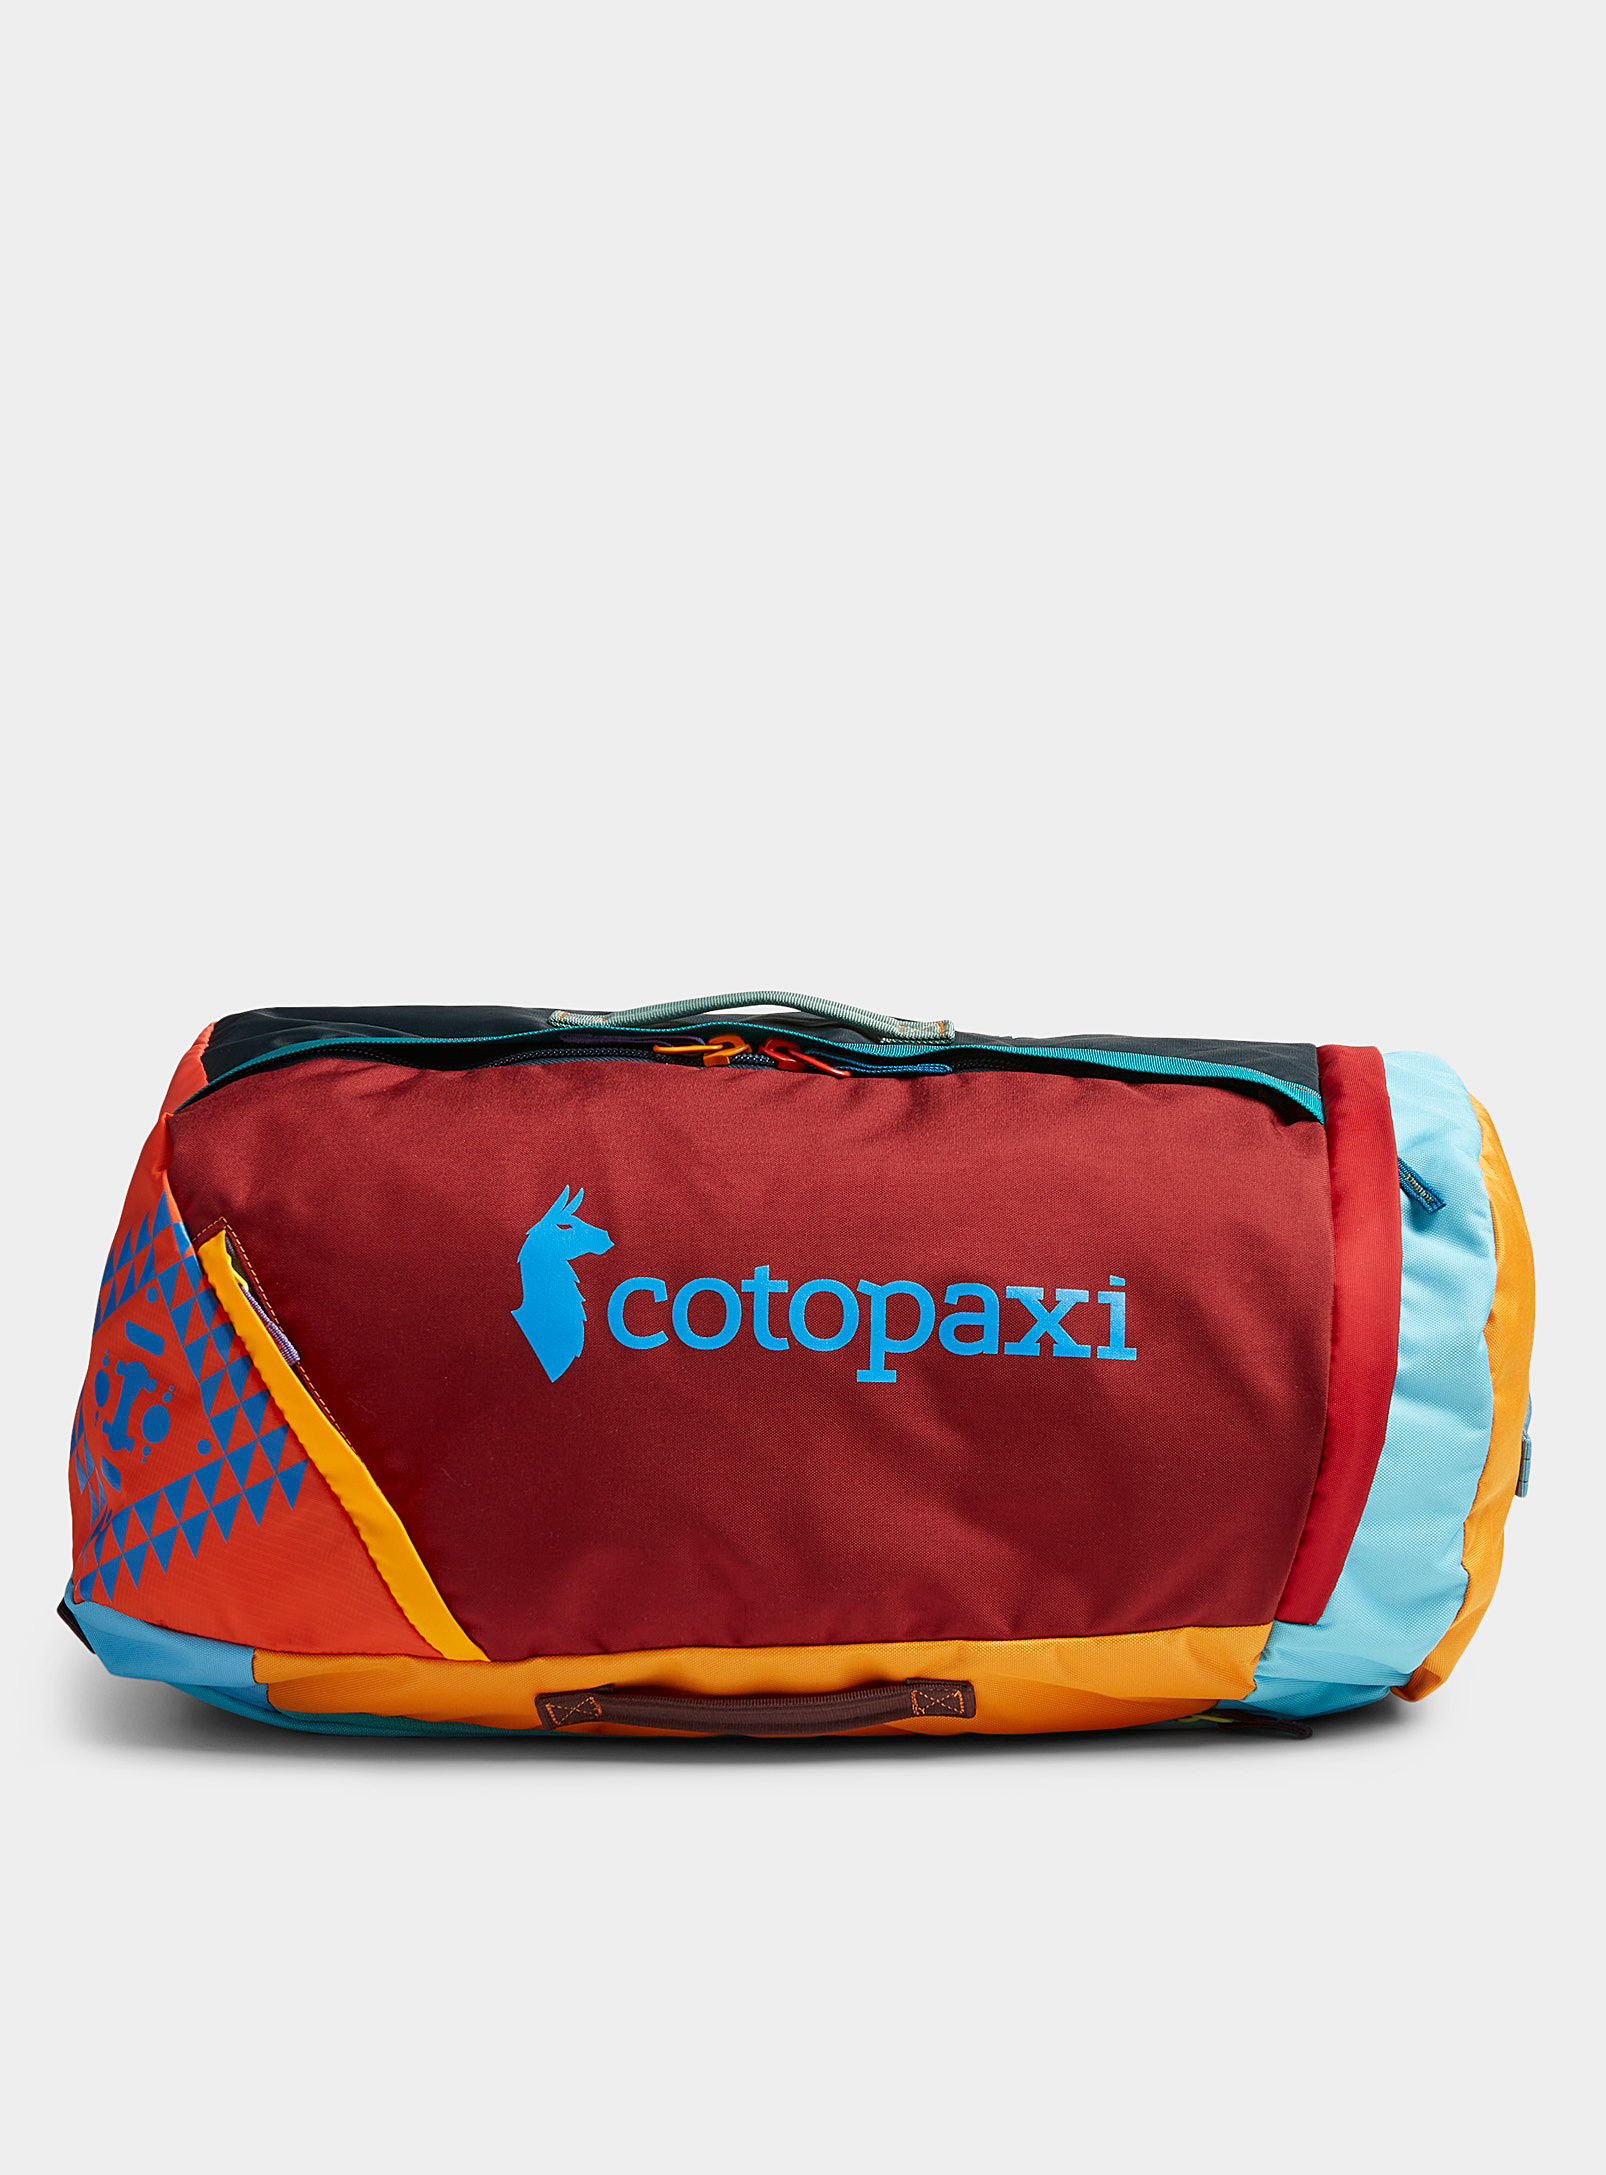 Cotopaxi - Le grand sac à bretelle 36 L Uyuni Coloris uniques issus de la collection Del Da